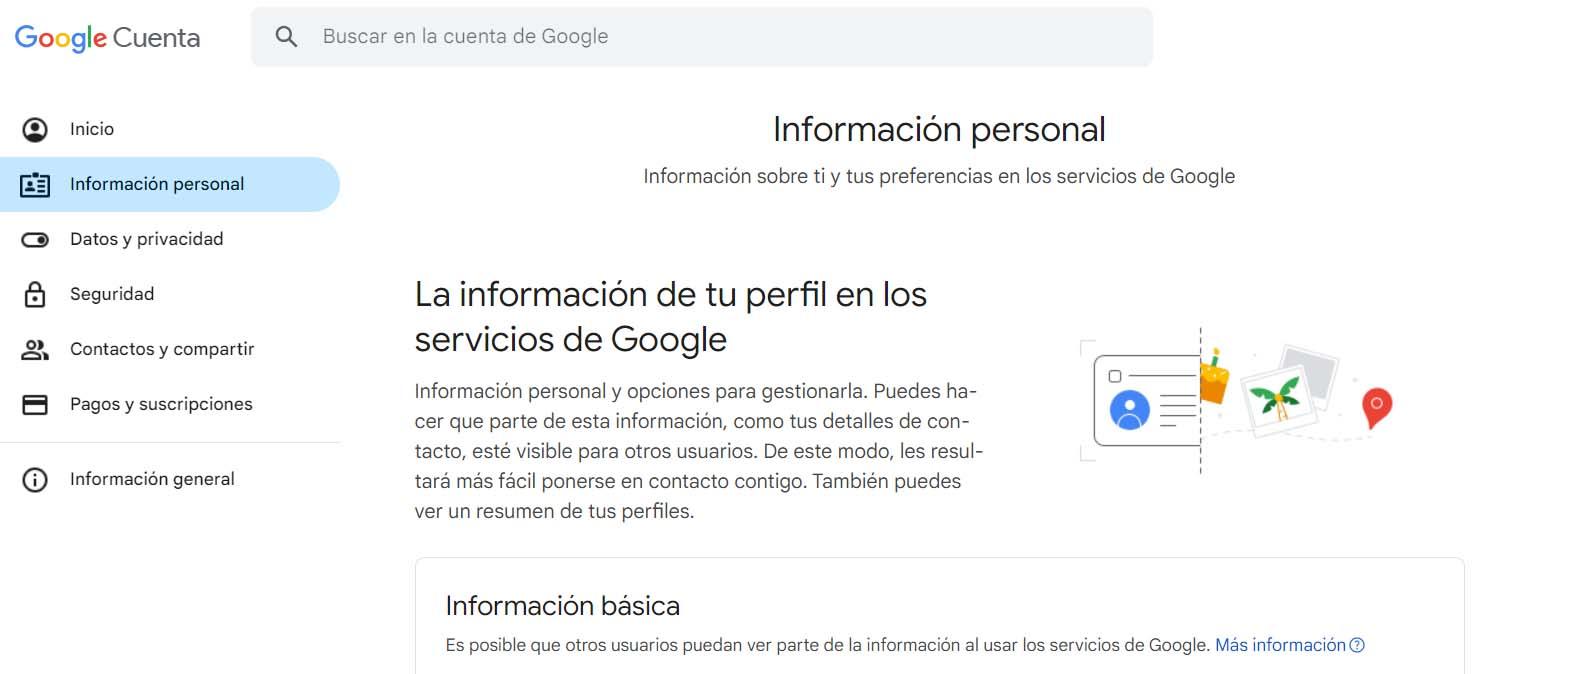 Información personal de Google